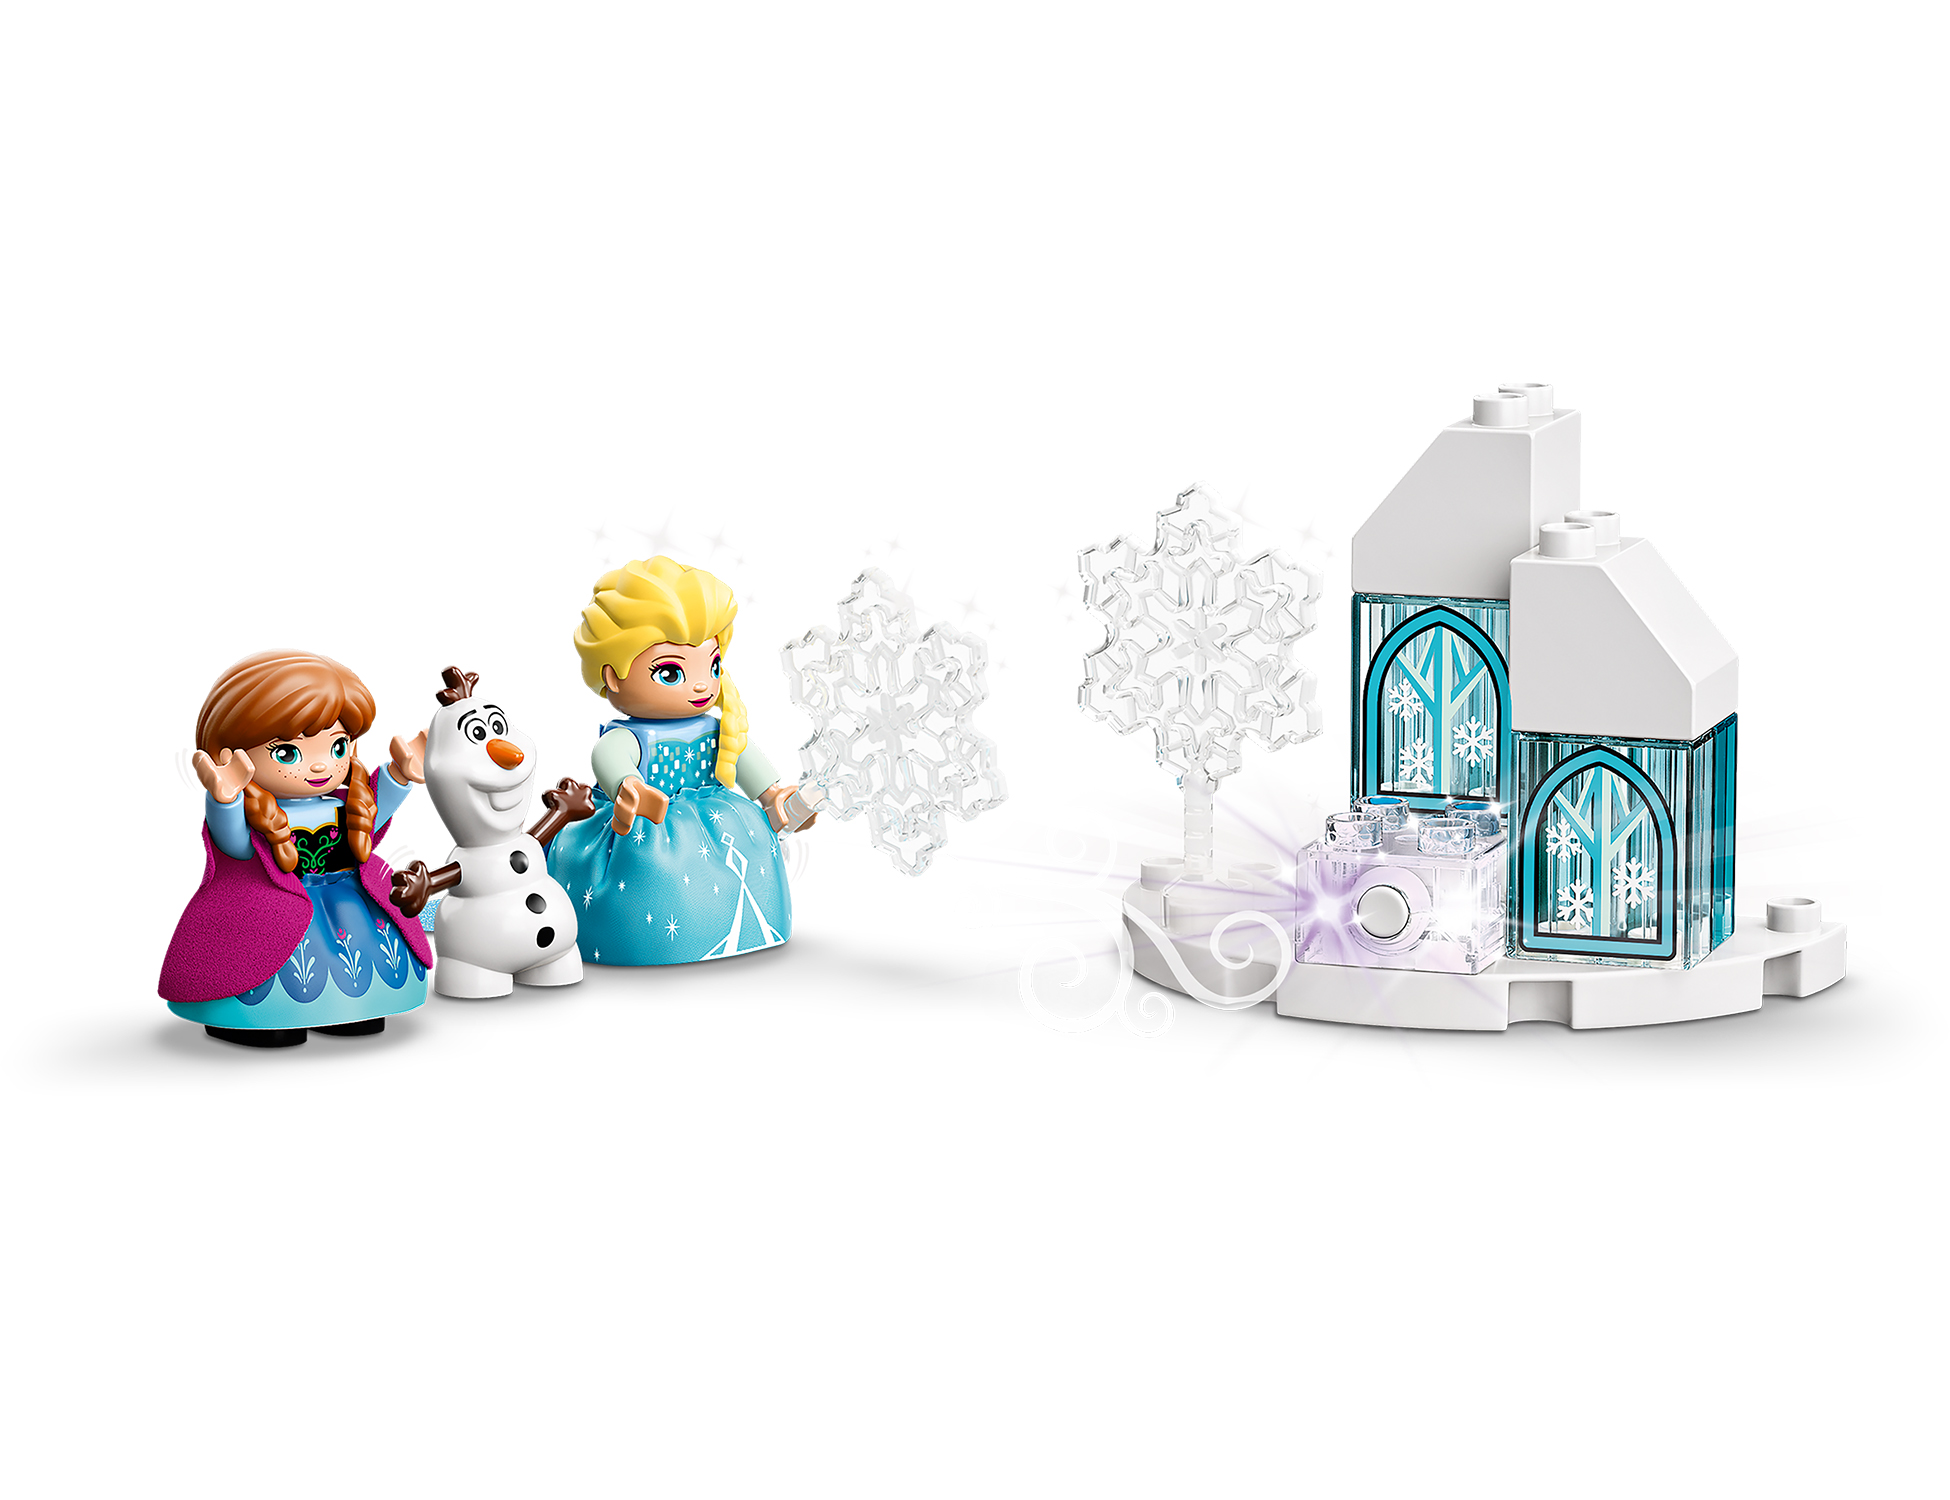 Il Castello di ghiaccio di Frozen - 10899 - Toys Center